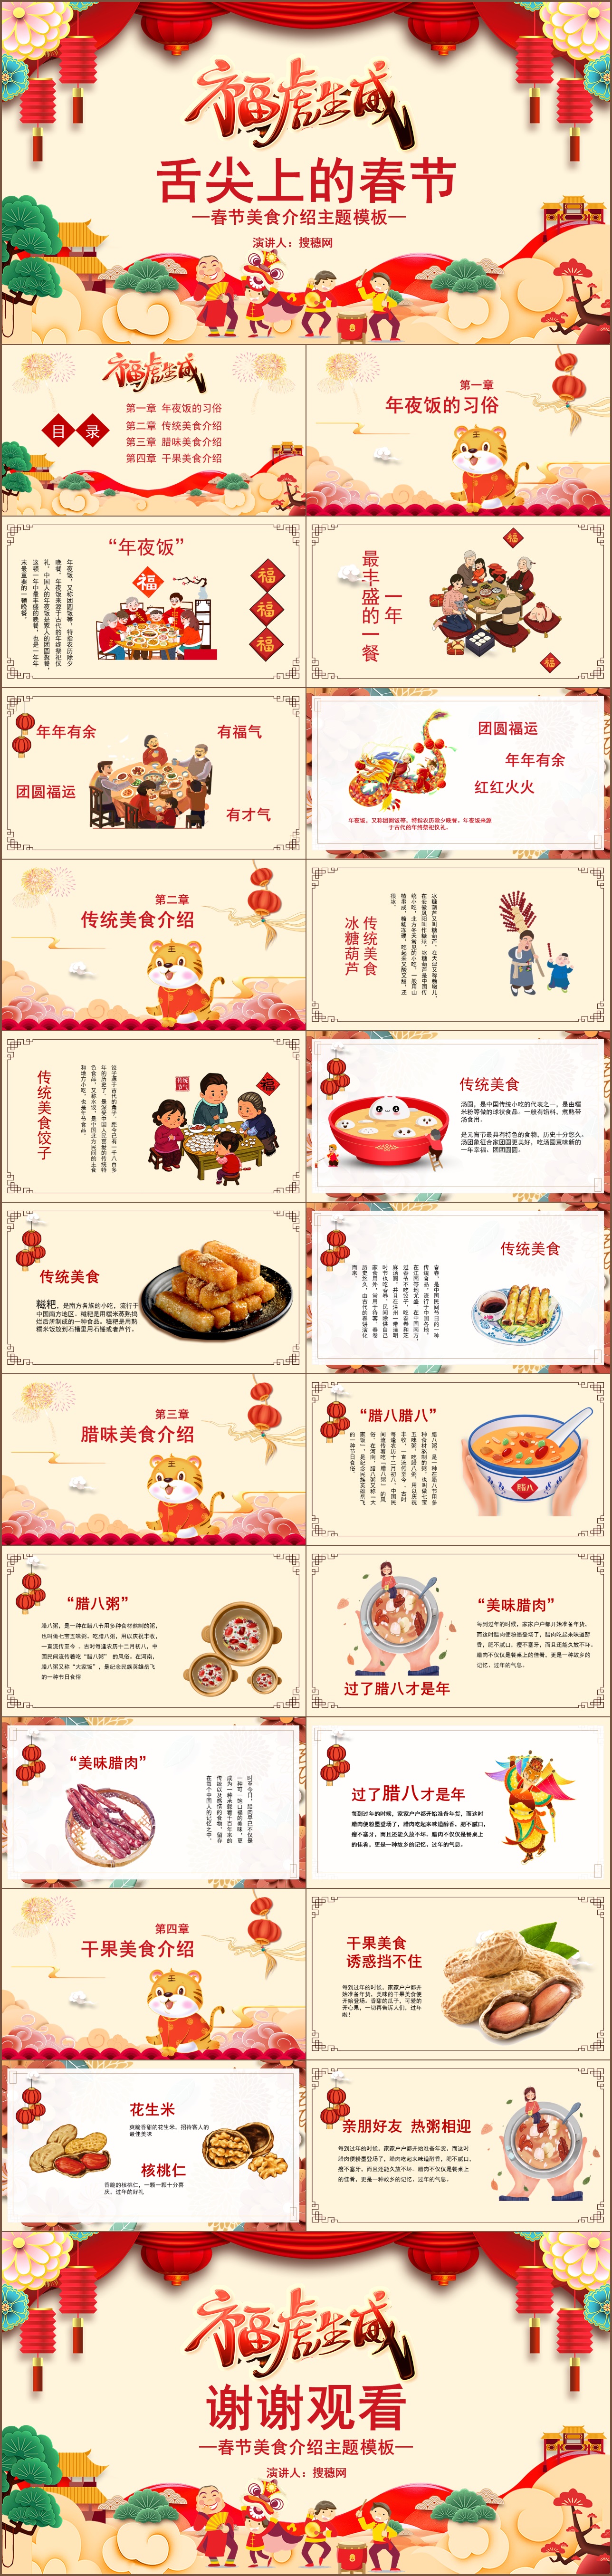 中国传统节日舌尖上的春节美食文化介绍PPT模板